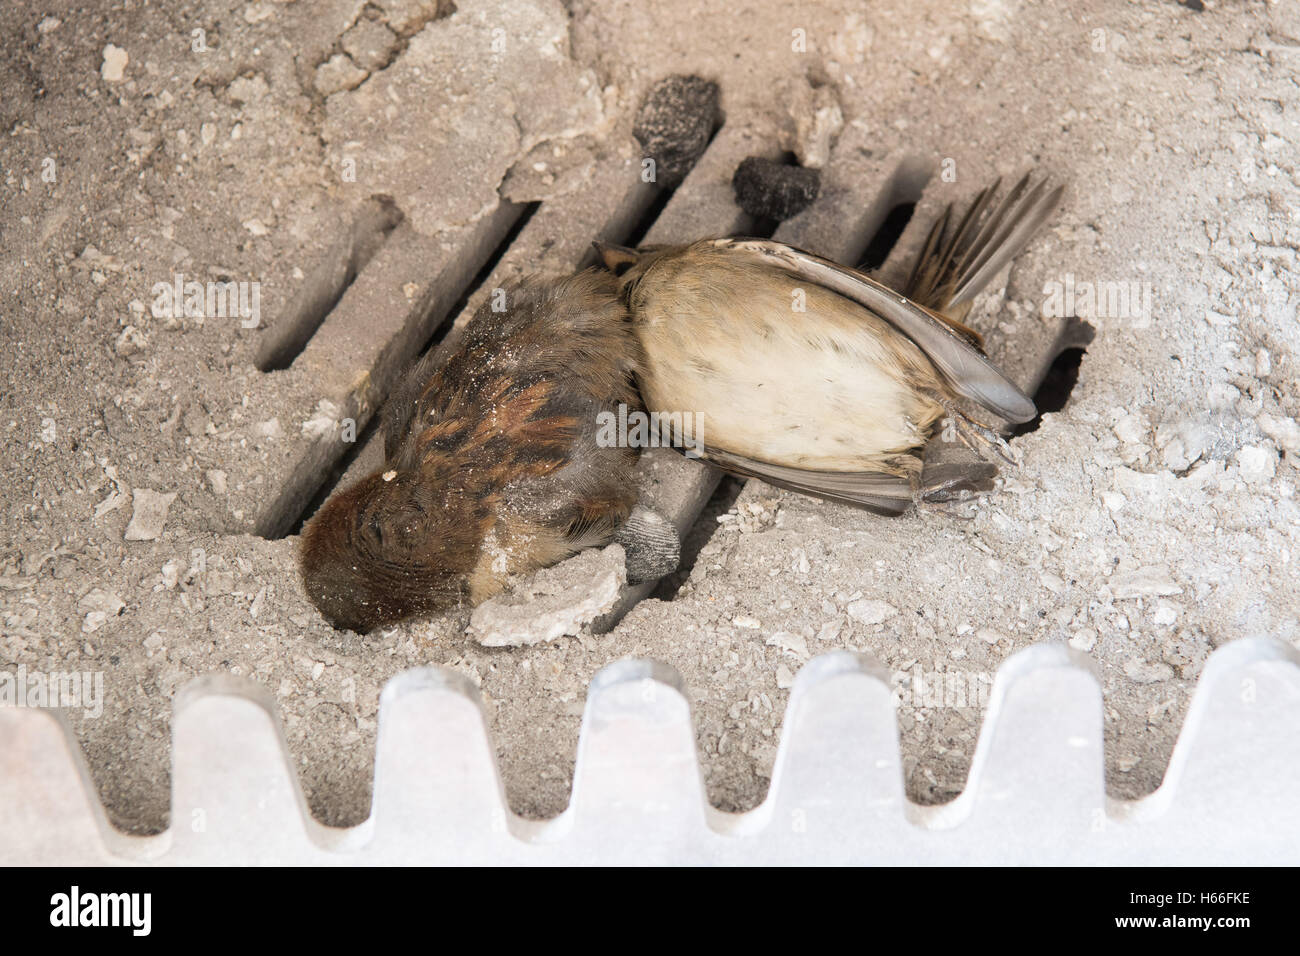 Vögel in Kamin - zwei Tote Vögel (Spatzen) fand in einem Holzofen nach  Insassen von Urlaub nach Damm zurück Stockfotografie - Alamy